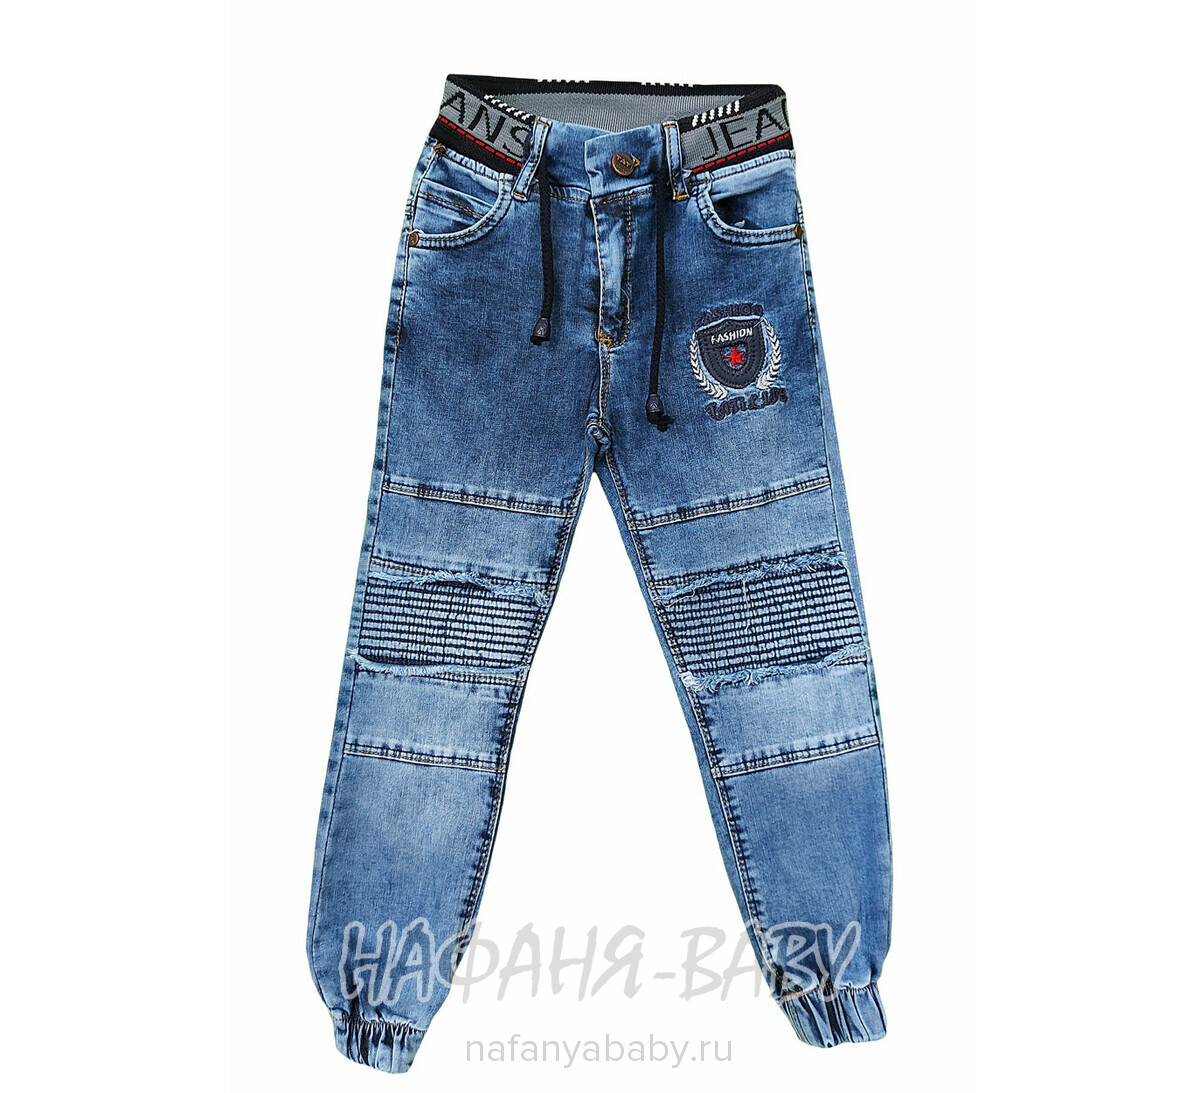 Подростковые джинсы TATI Jeans арт: 2096, 10-15 лет, 5-9 лет, оптом Турция